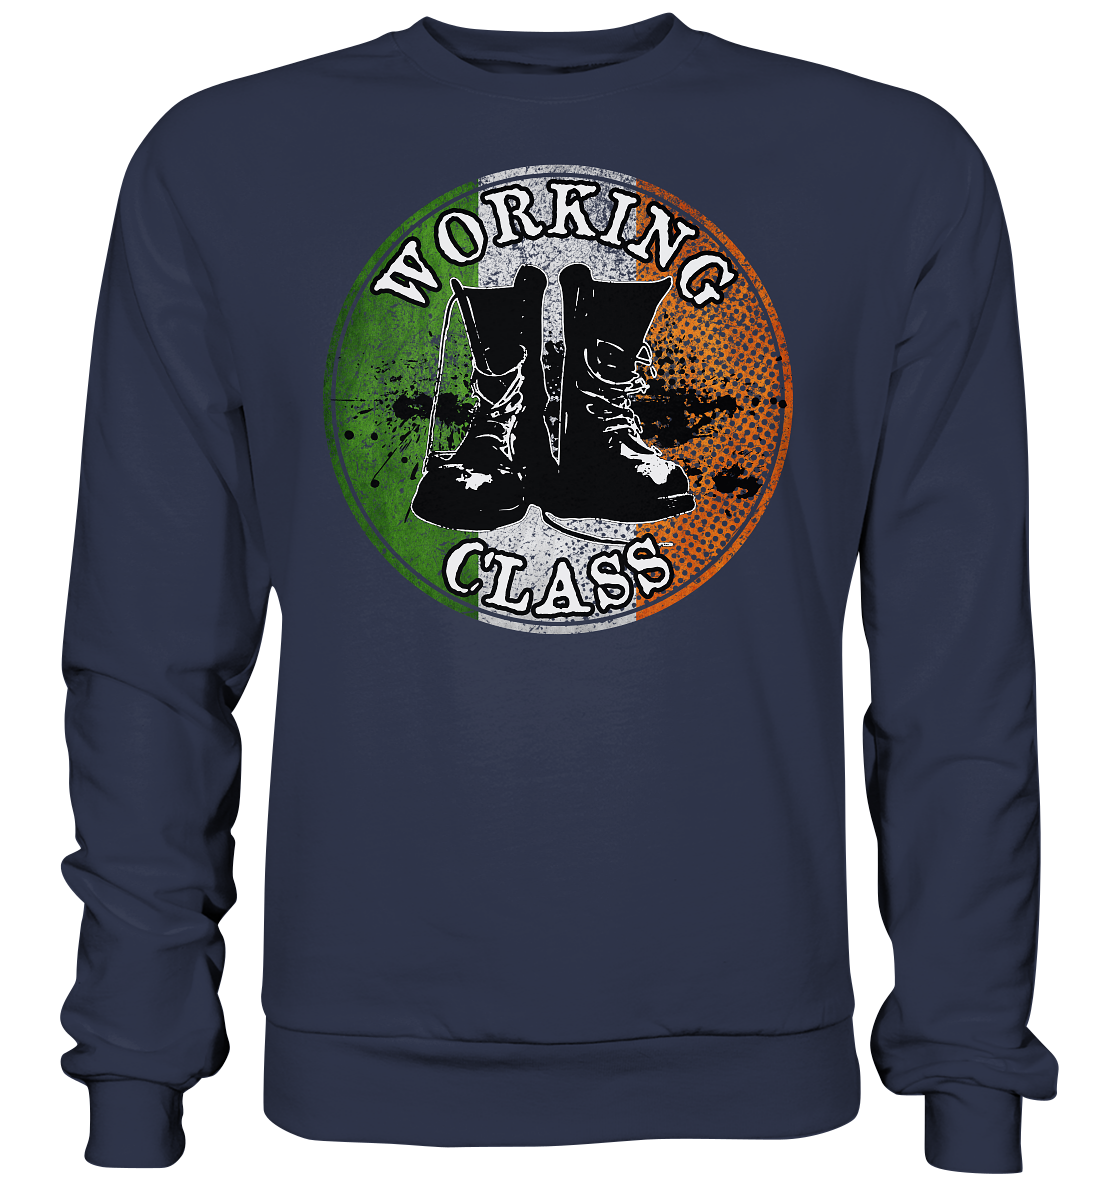 Working Class "Ireland" - Premium Sweatshirt